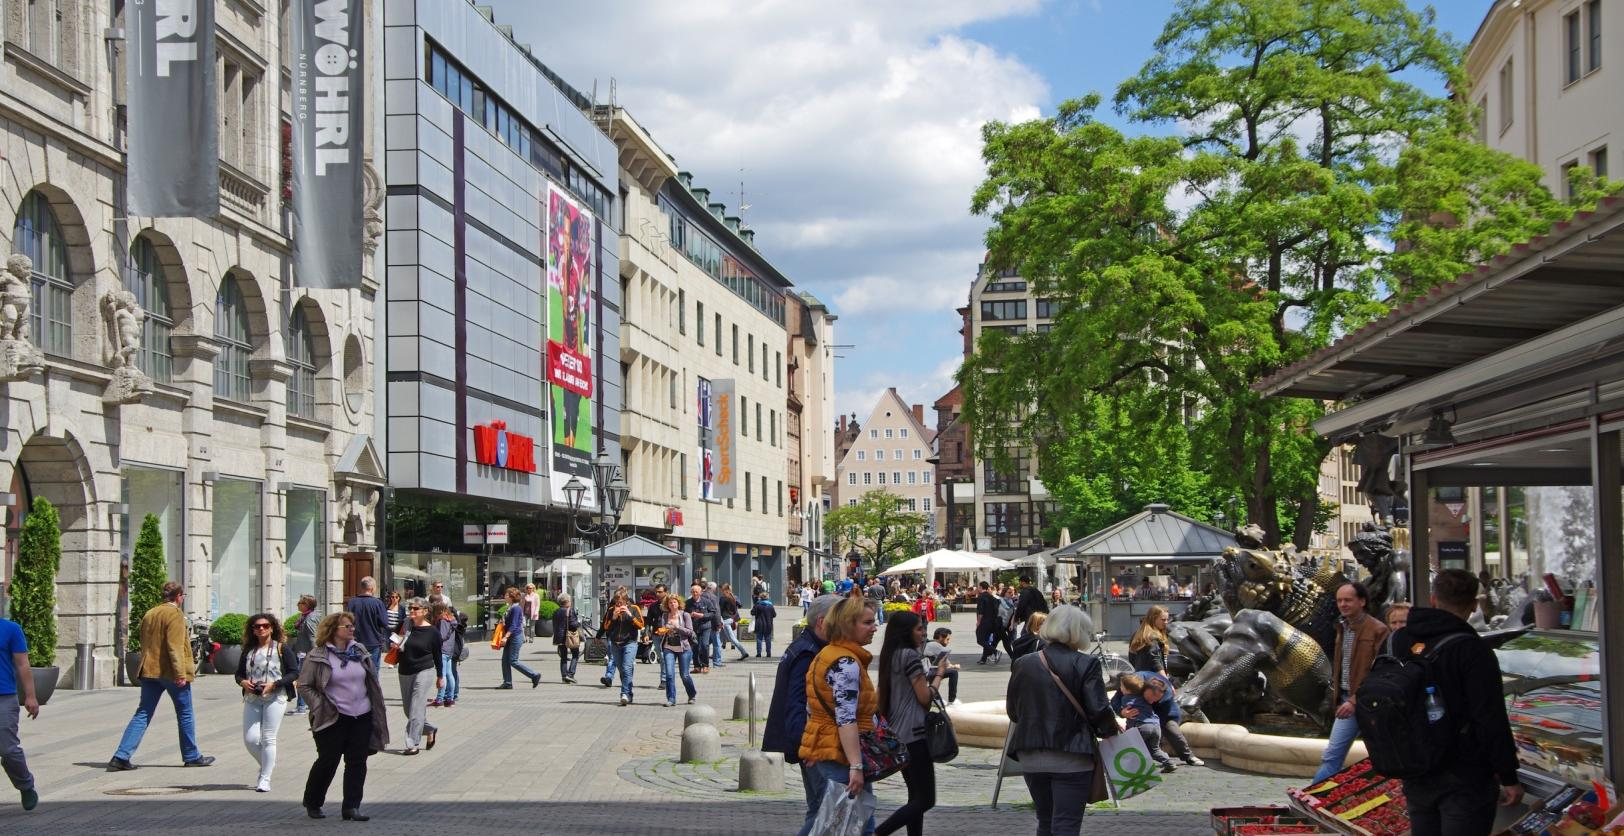 Da ist was los: Shoppingerlebnis und Aufenthaltsqualität der Ludwigsplatz bietet beides!